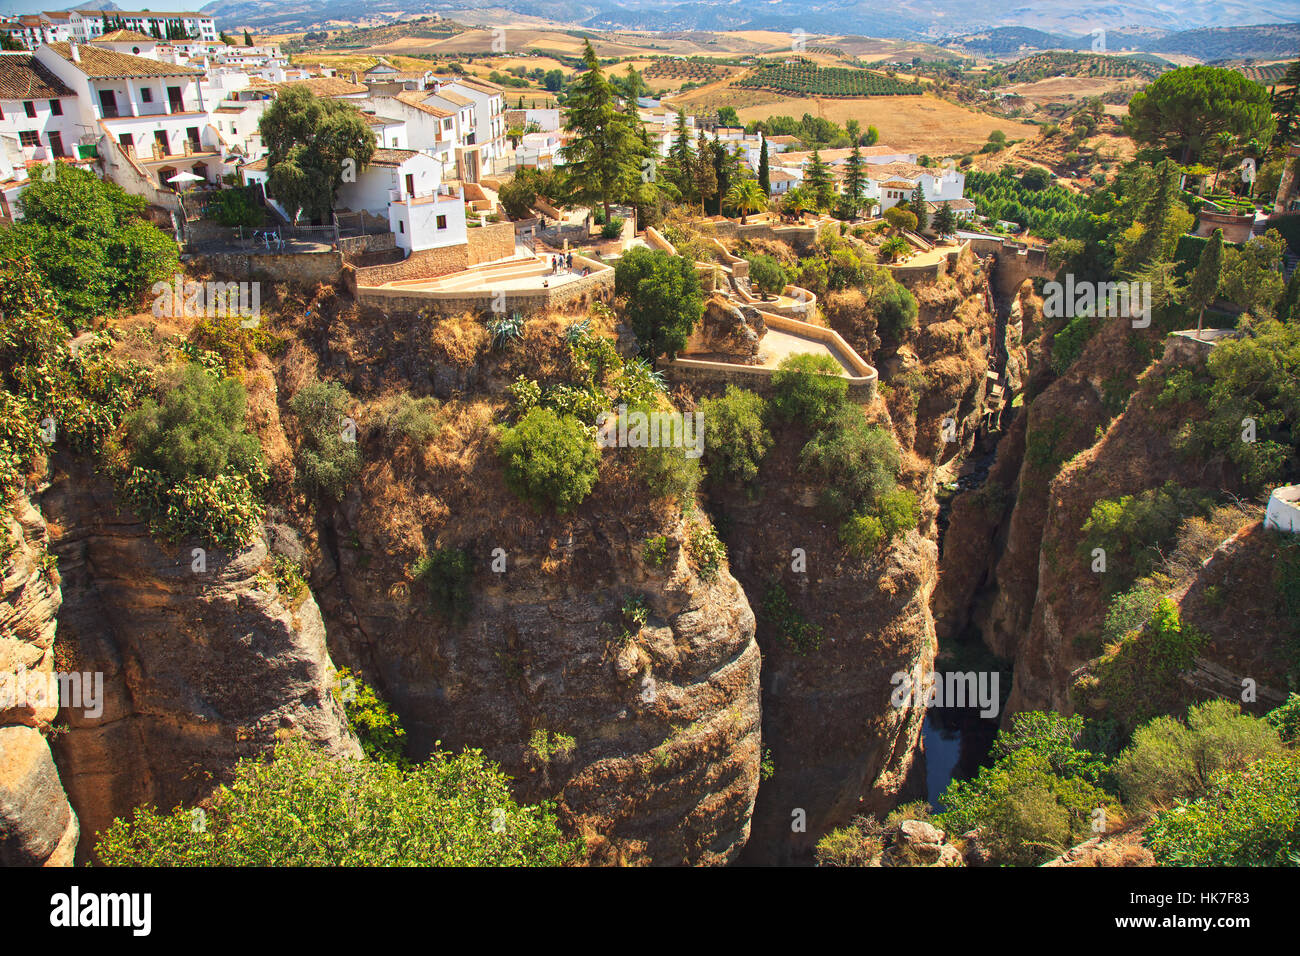 Tajo-Schlucht in Ronda, weißes Dorf, aufbauend auf den Felsen. Blick von der alten Brücke. Andalusien, Spanien. Stockfoto